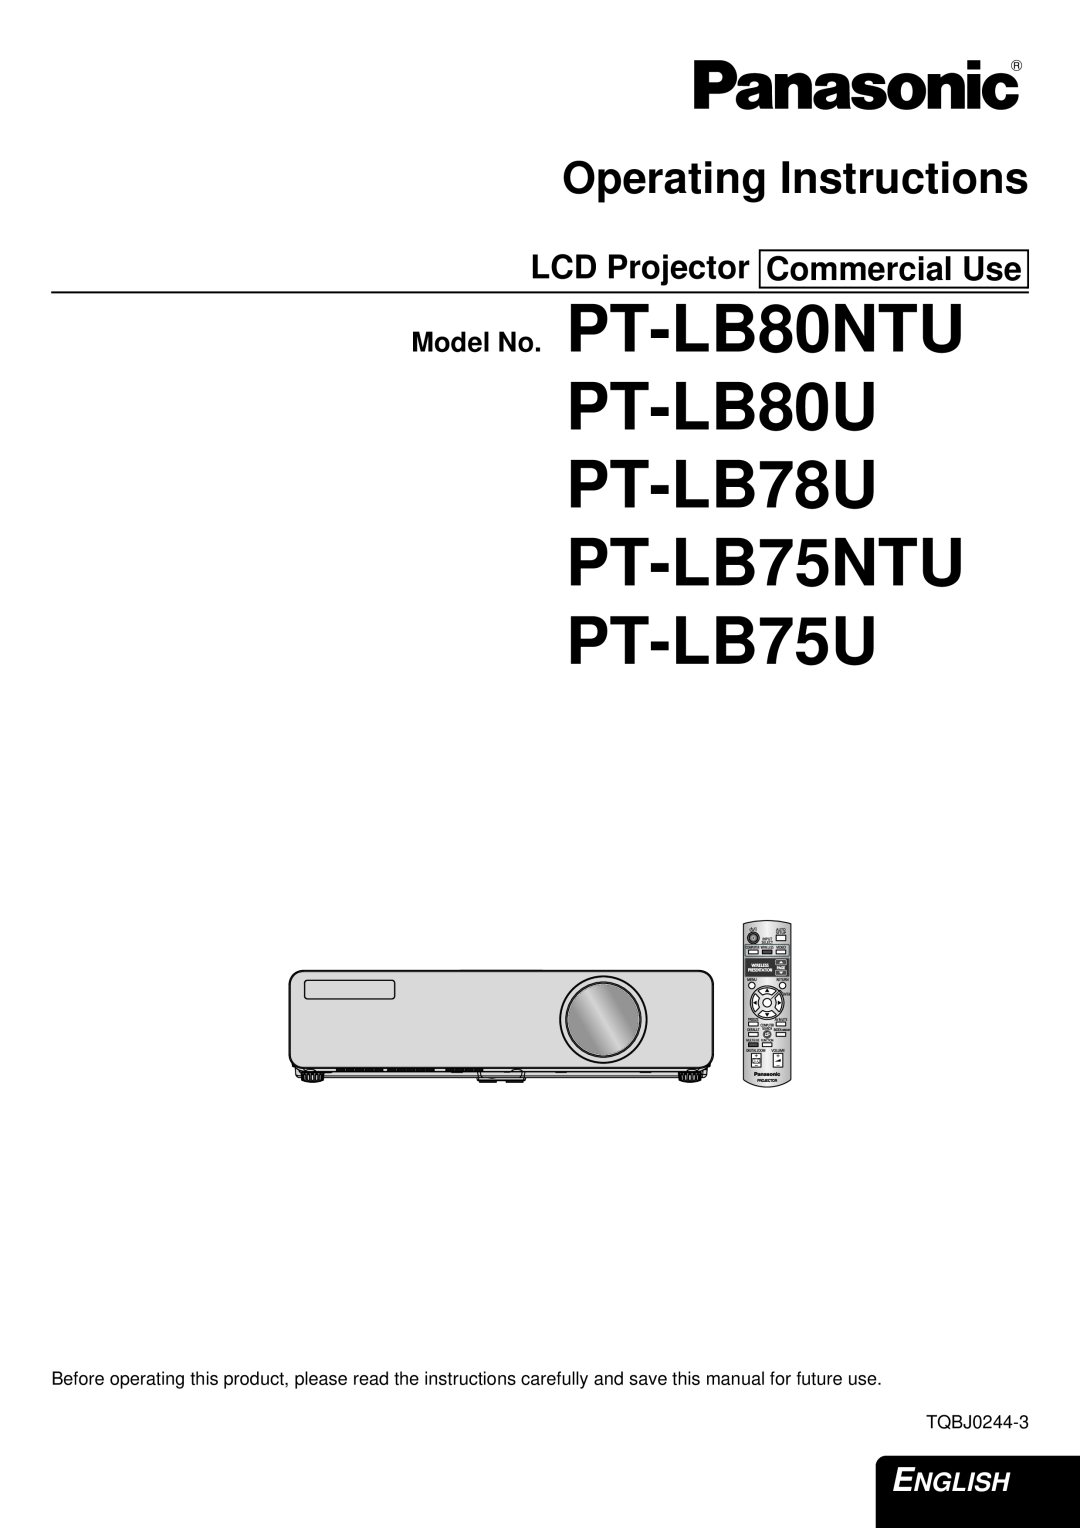 Panasonic manual LCD Projector Commercial Use, PT-LB80U PT-LB78U PT-LB75NTU PT-LB75U, Operating Instructions, English 